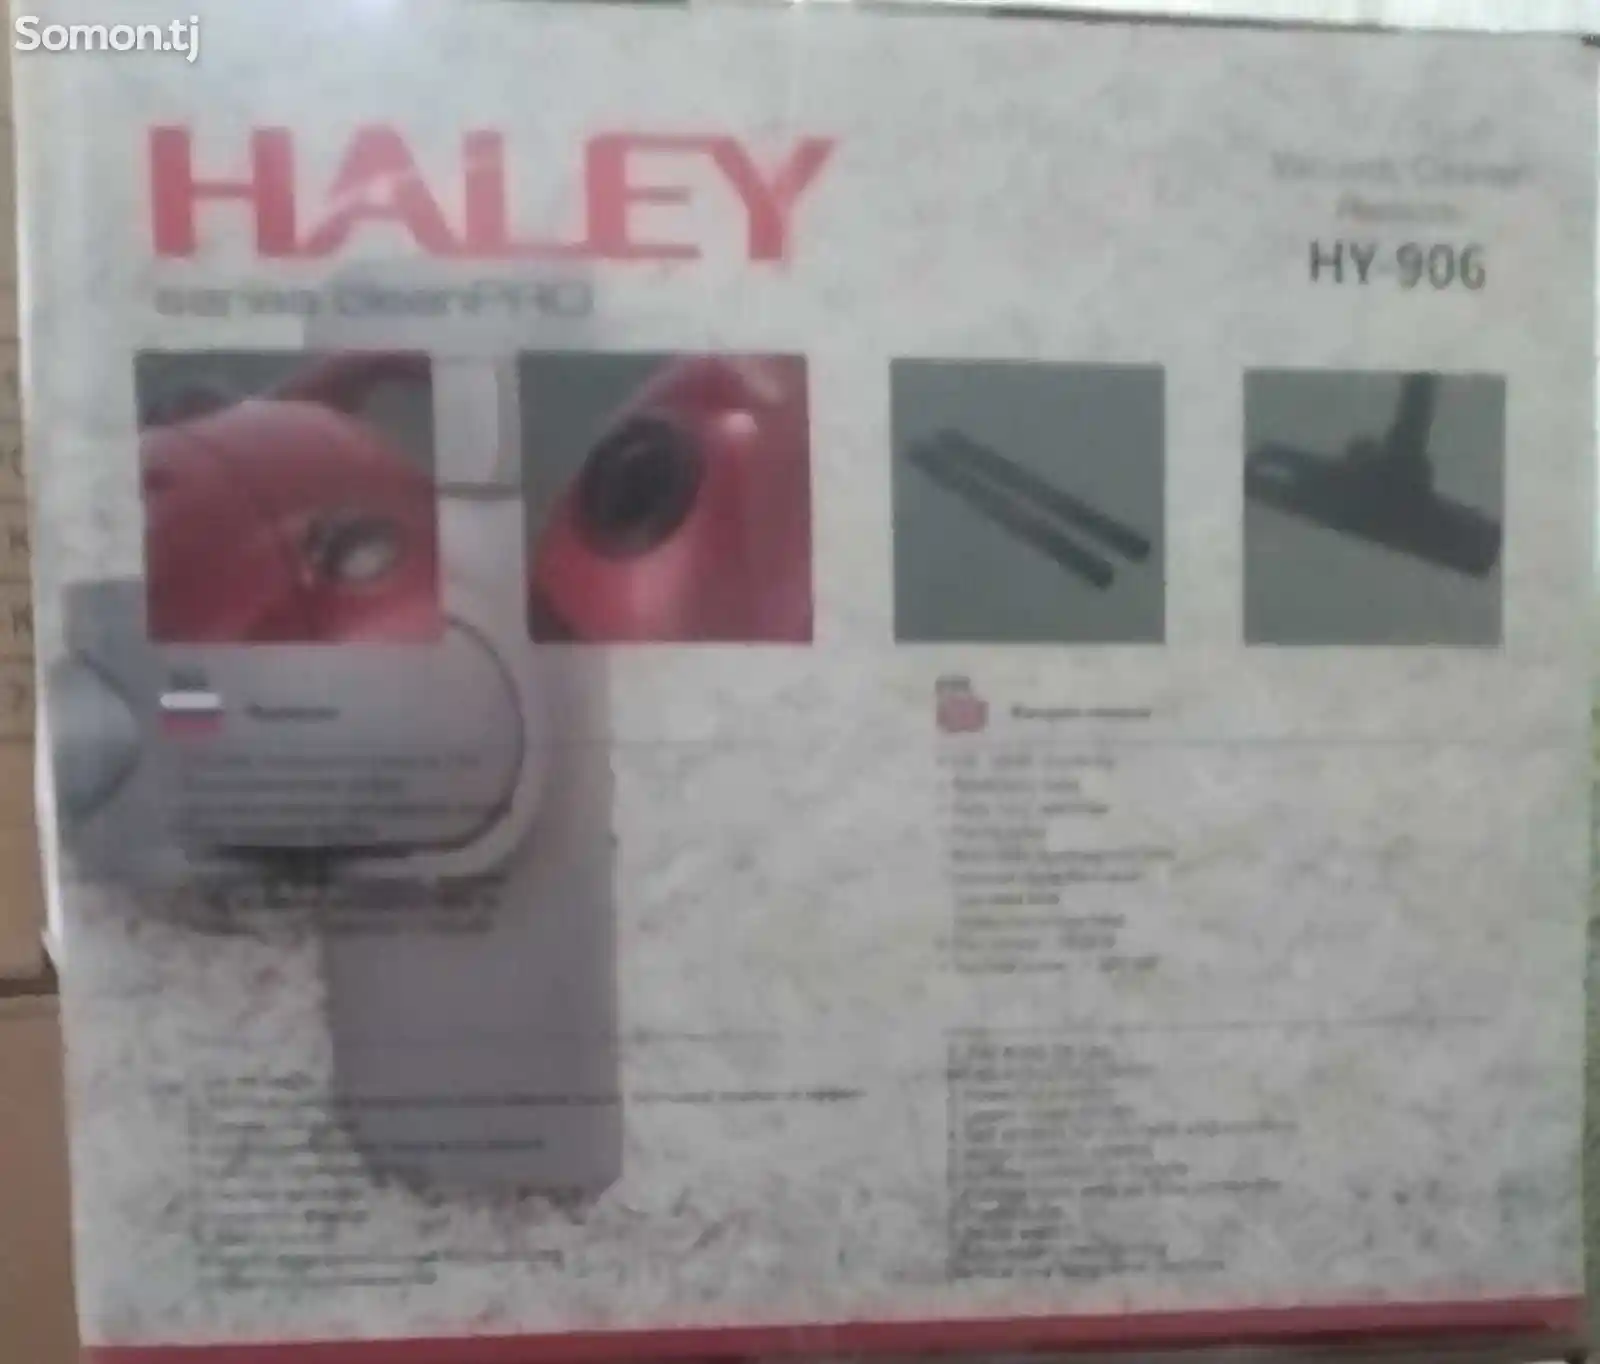 Пылесос Haley HY-906-4